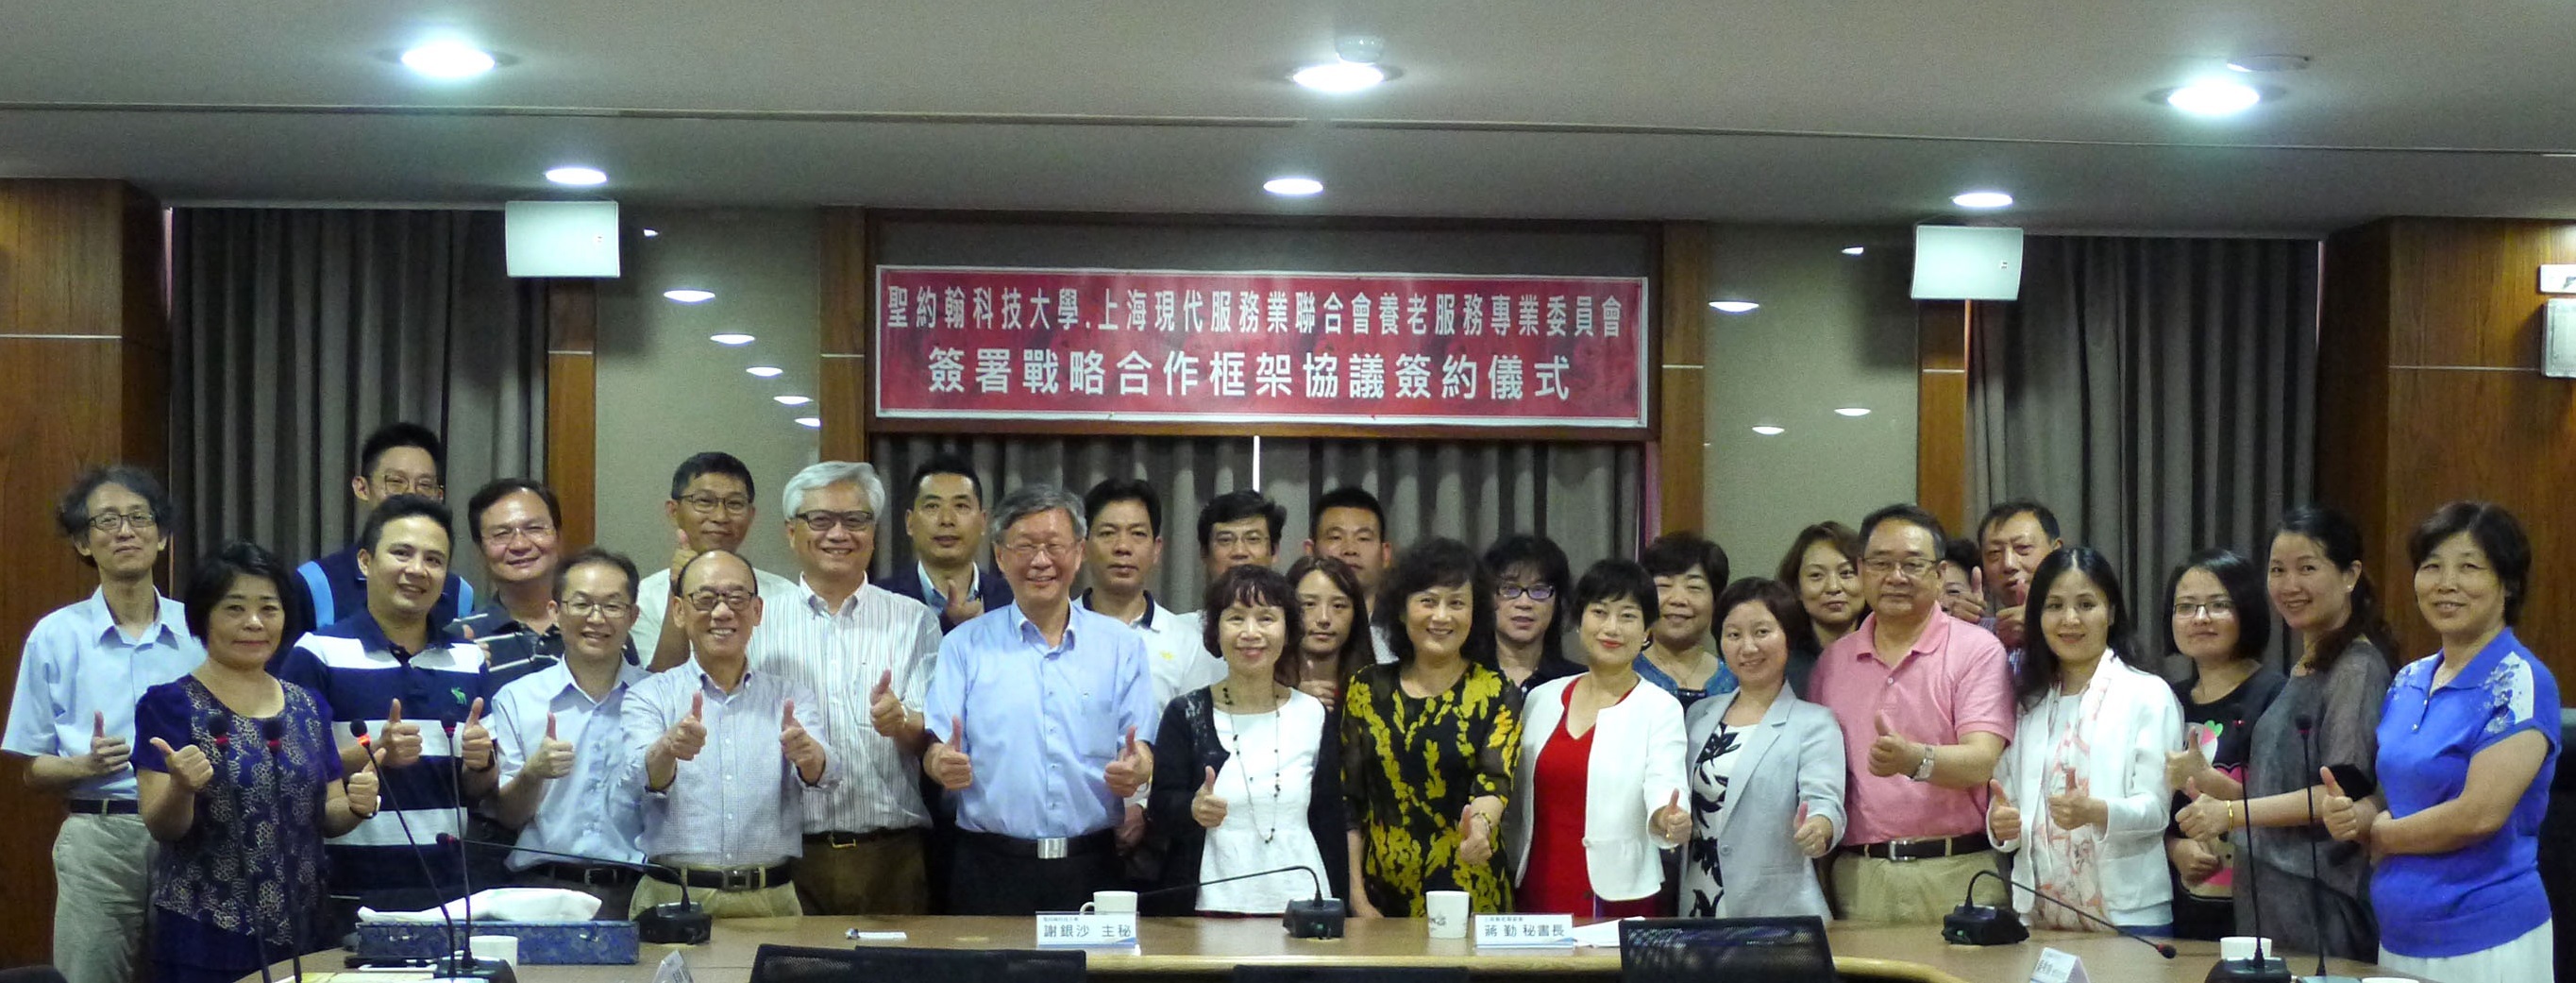 為建立兩岸高齡照服產業人才培訓標準化制度，上海養老專委會與聖約翰科技大學簽署戰略合作框架協議，透過雙方各自的組織優勢，開展長期合作關係